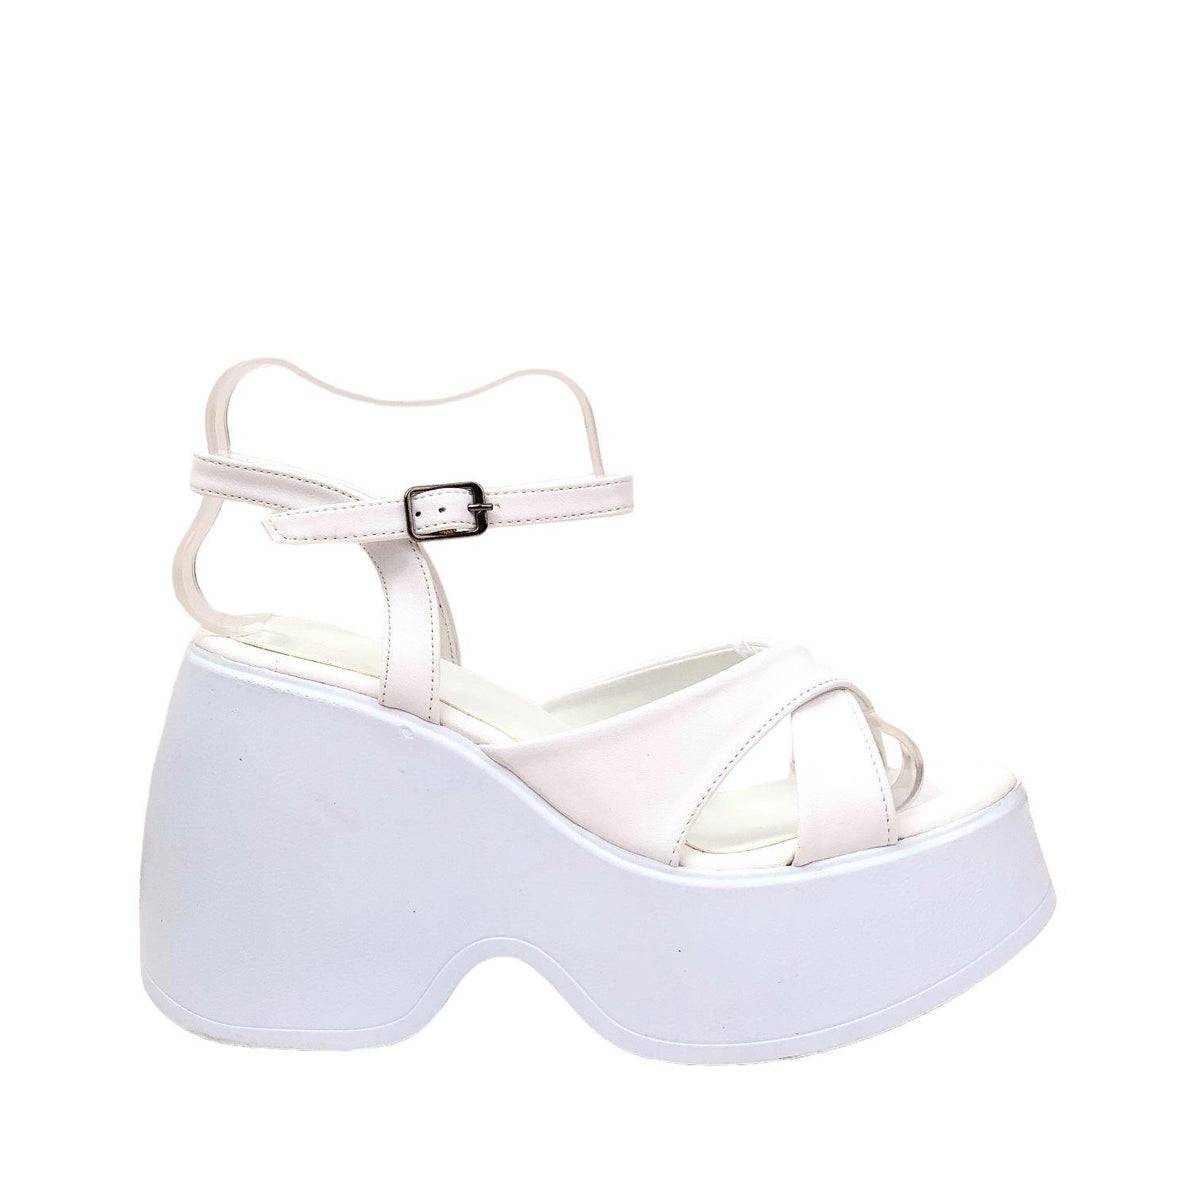 Women's Retya White High Wedge Heel Cross Strap Sandals - STREETMODE ™